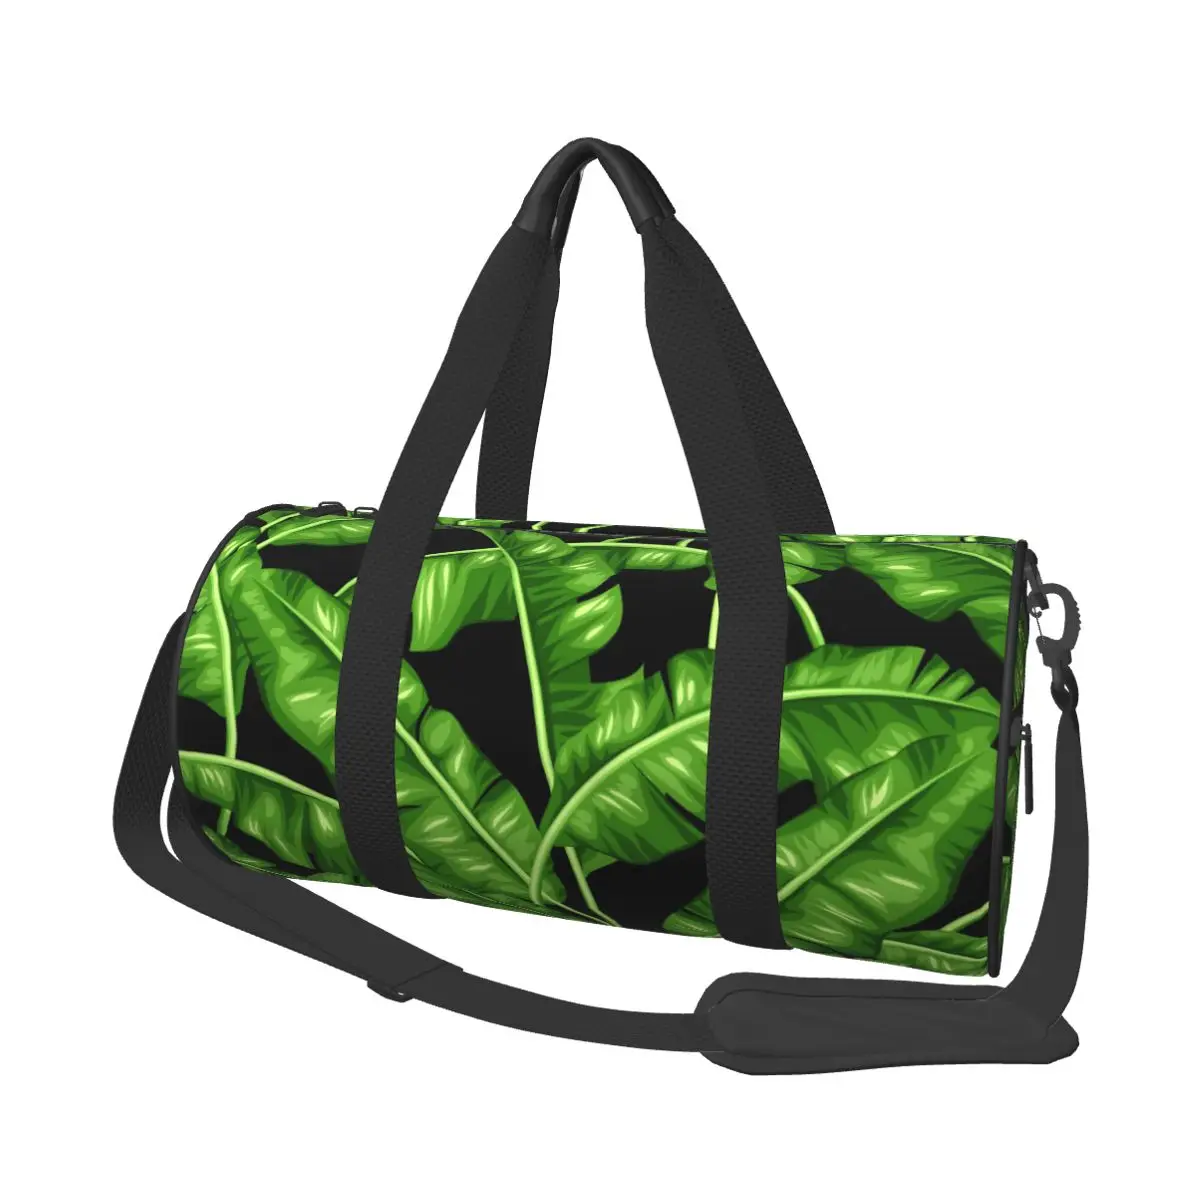 

Дорожная сумка, вместительный чемодан с тропическими банановыми листьями, удобная дамская сумочка на плечо для ночных выходных